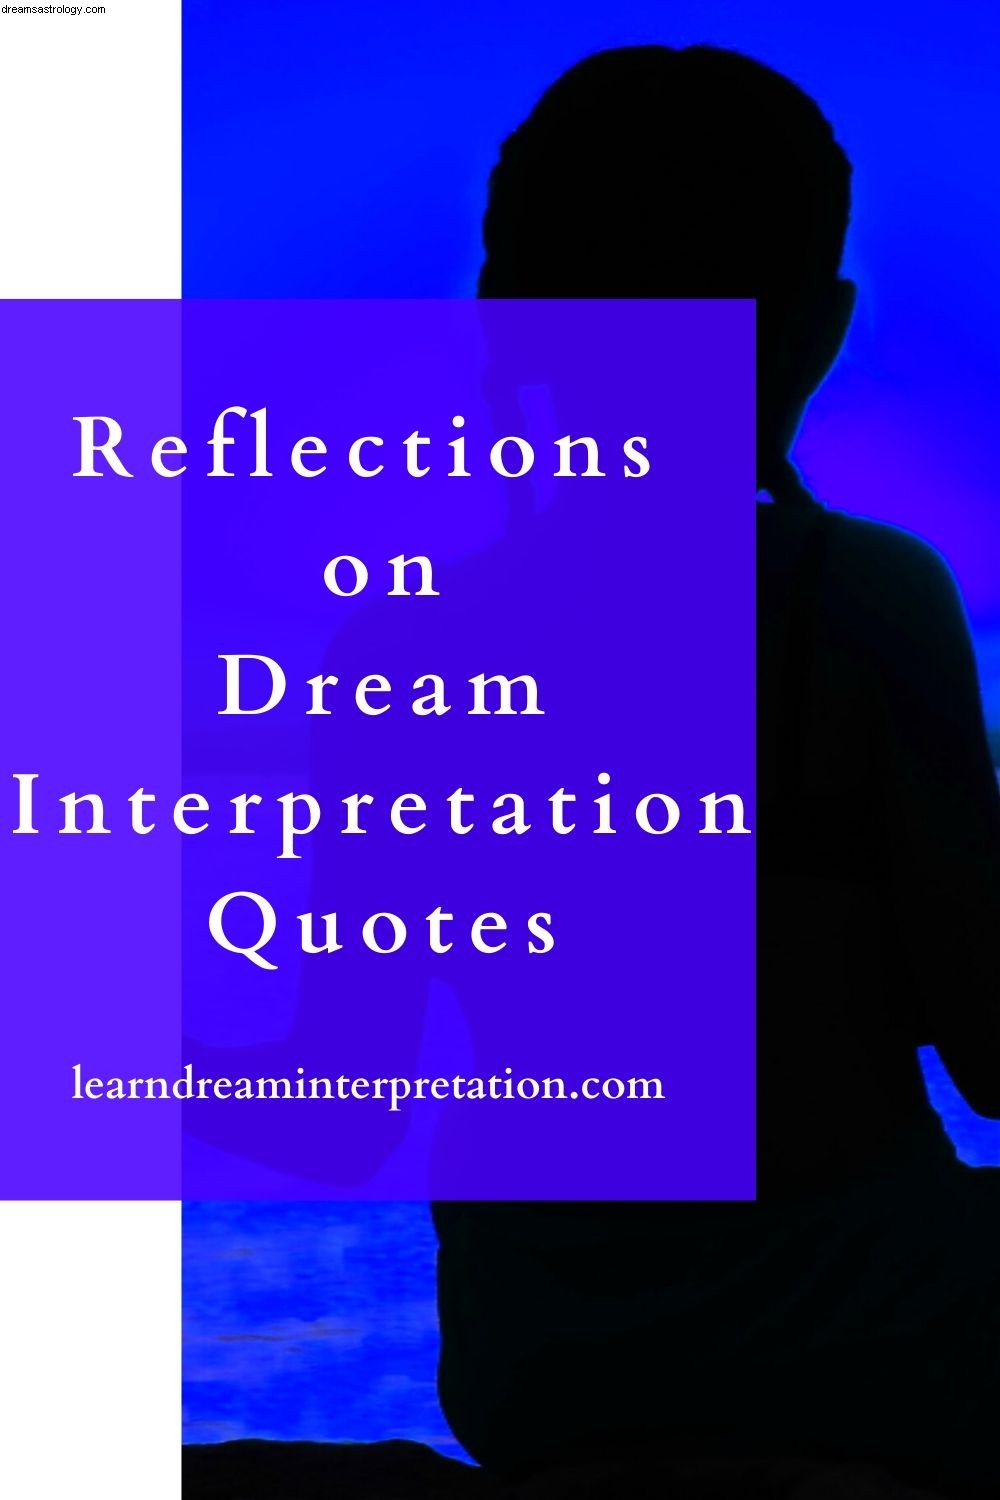 Riflessioni sulle citazioni di interpretazione dei sogni 